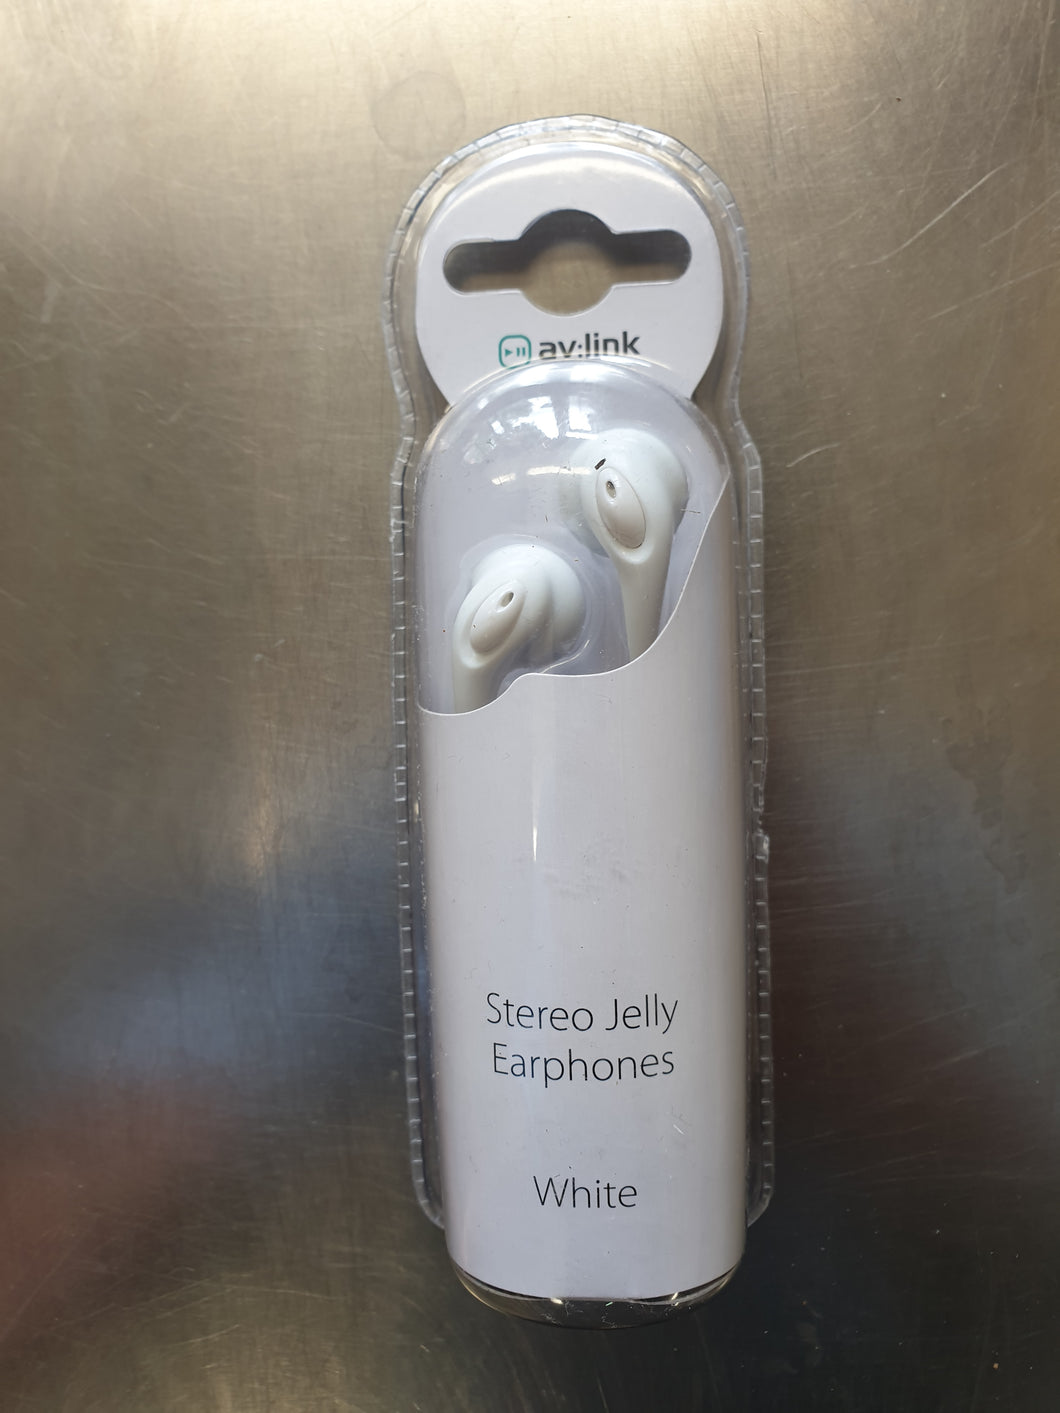 Stereo Jelly Earphones